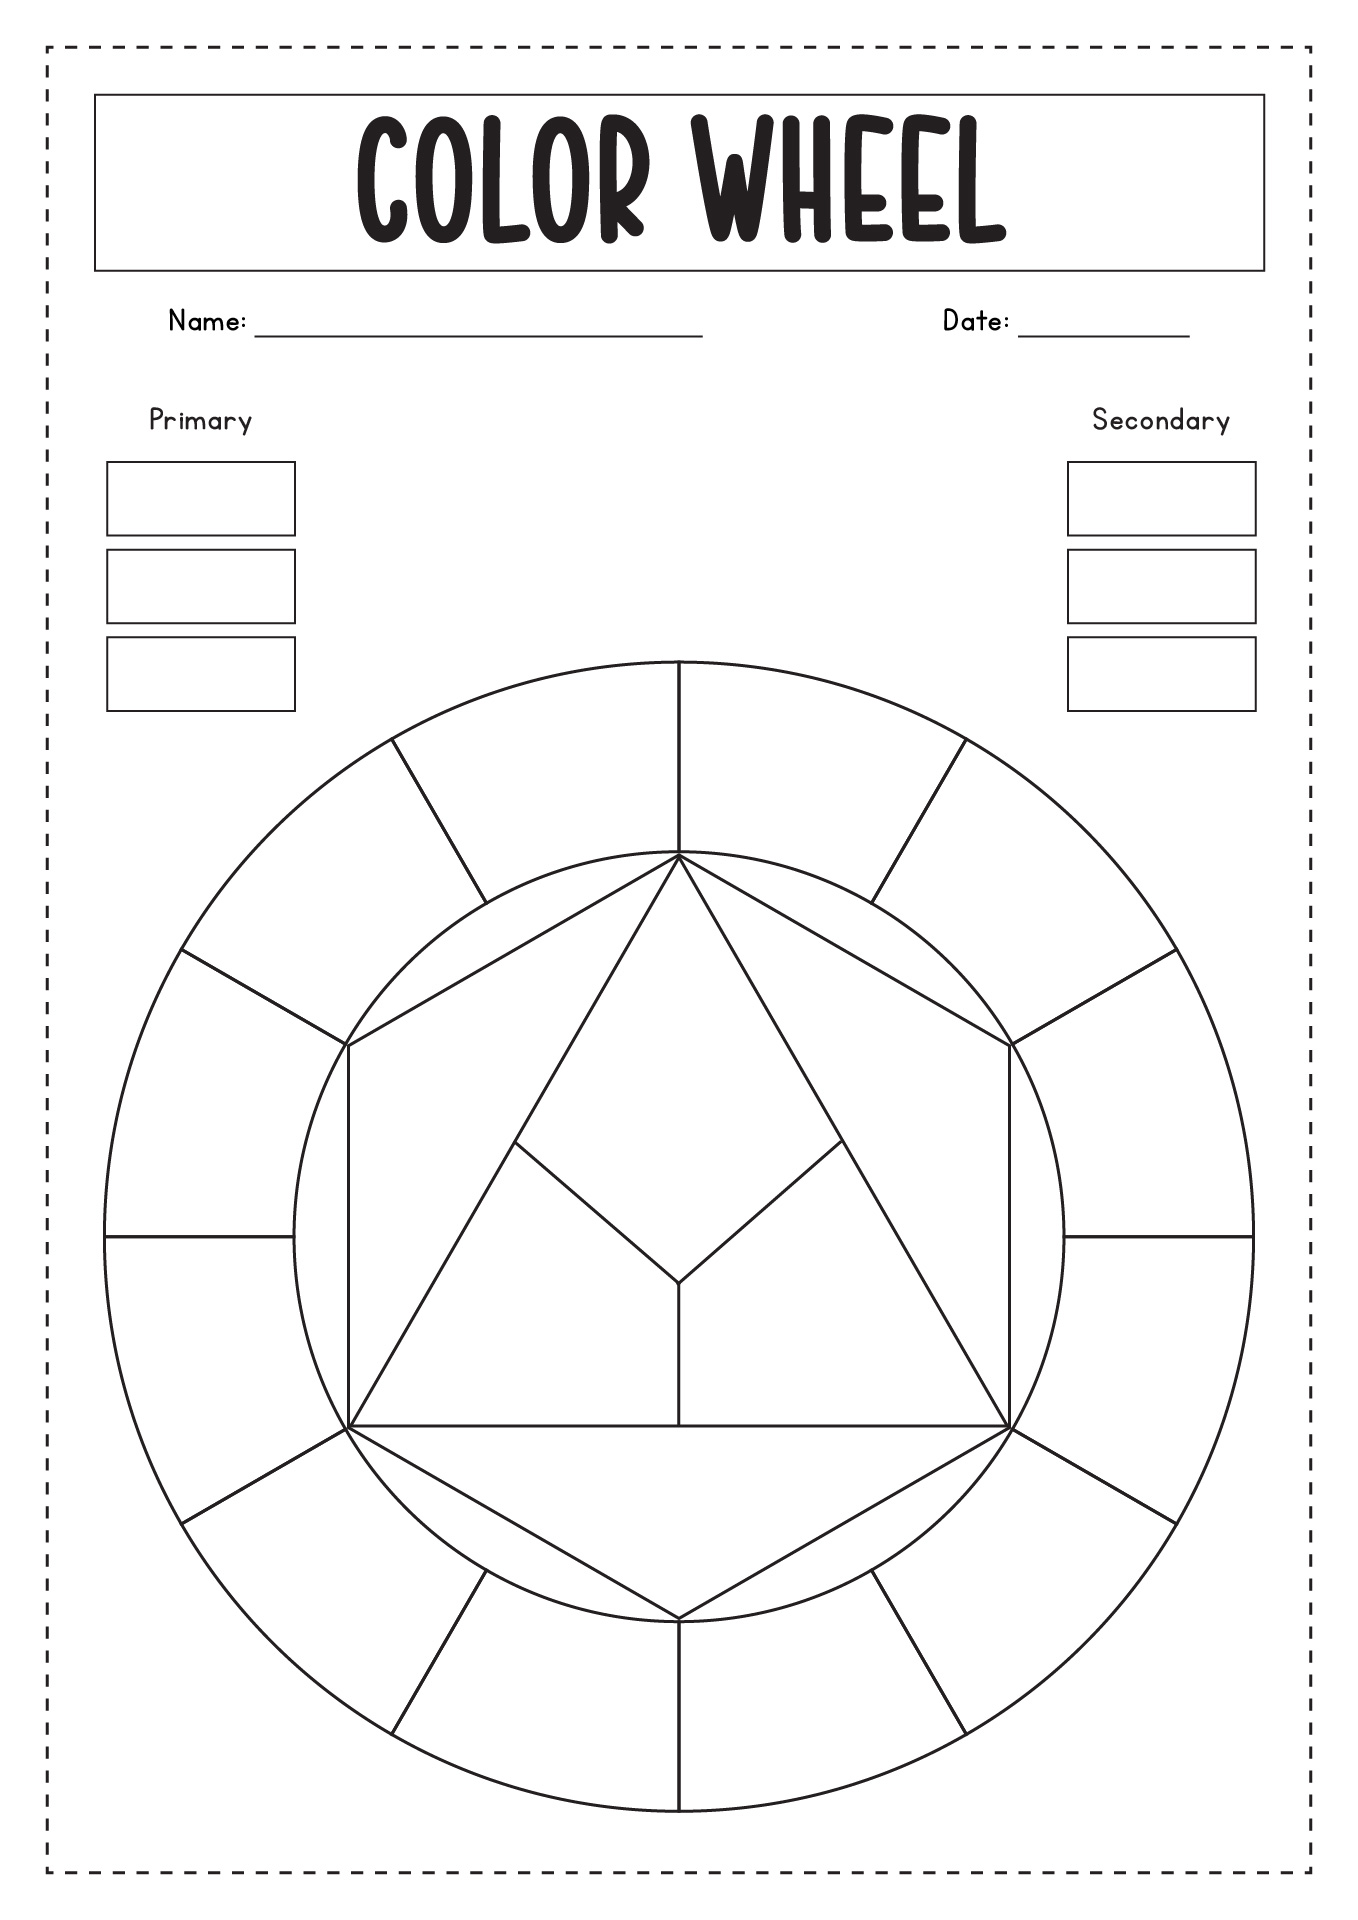 Blank Color Wheel Worksheet